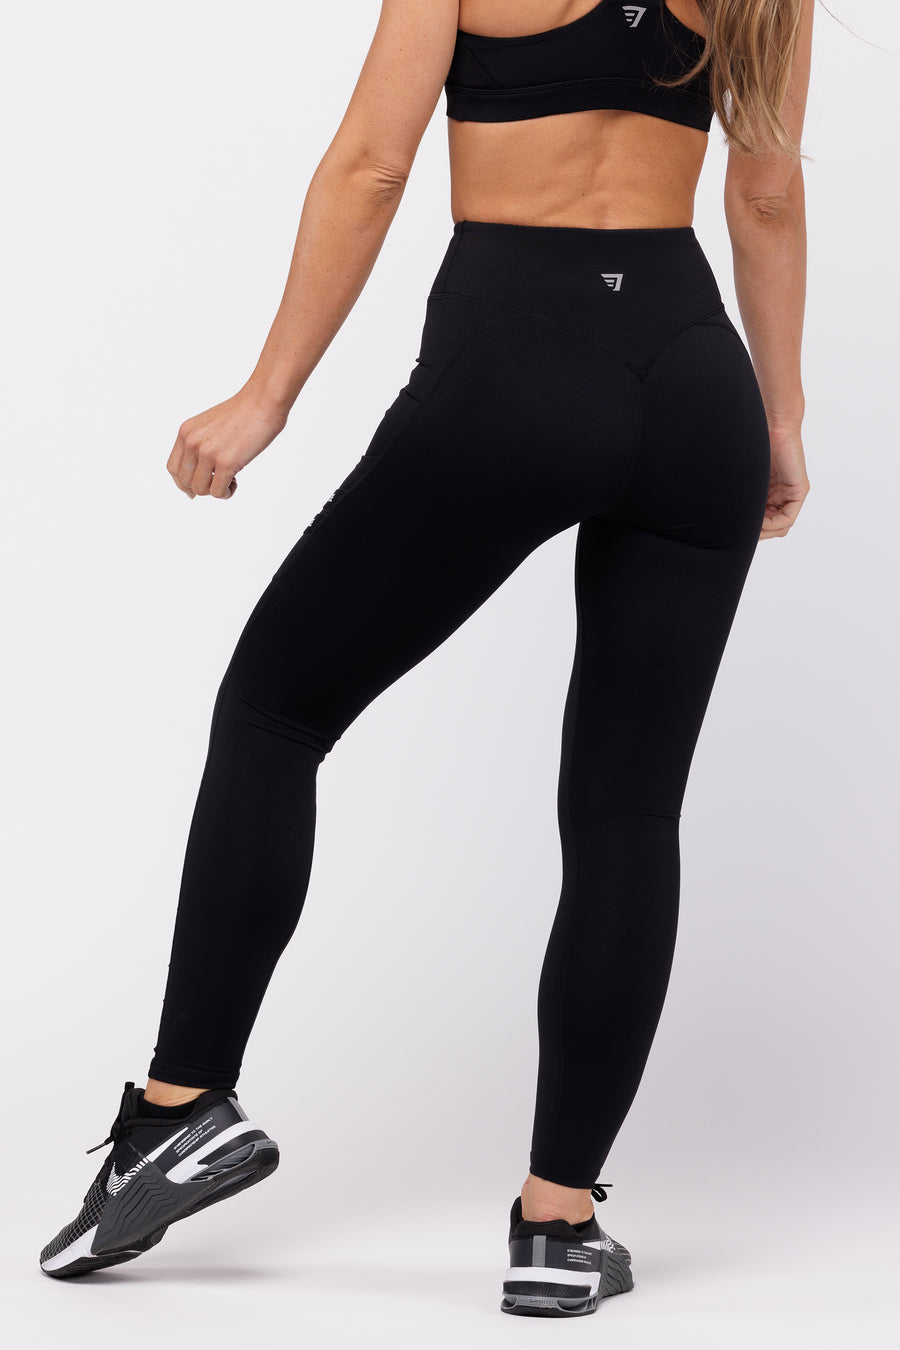 Lucy Activewear Powermax Black Perfect Core Pants, Full Length, Size Medium  - Conseil scolaire francophone de Terre-Neuve et Labrador